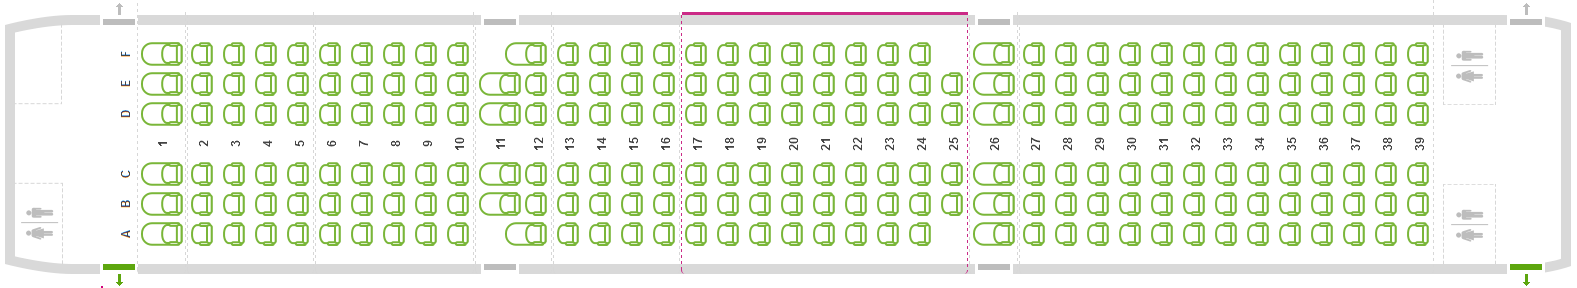 A légitársaság foglalási rendszerében már meg is jelent az A321-es seat map-je, melyen az utasok kiválaszthatják helyüket a repülőgép 230 ülőhelye egyikén. (Kép forrása: Wizz Air foglalási rendszer) | © AIRportal.hu